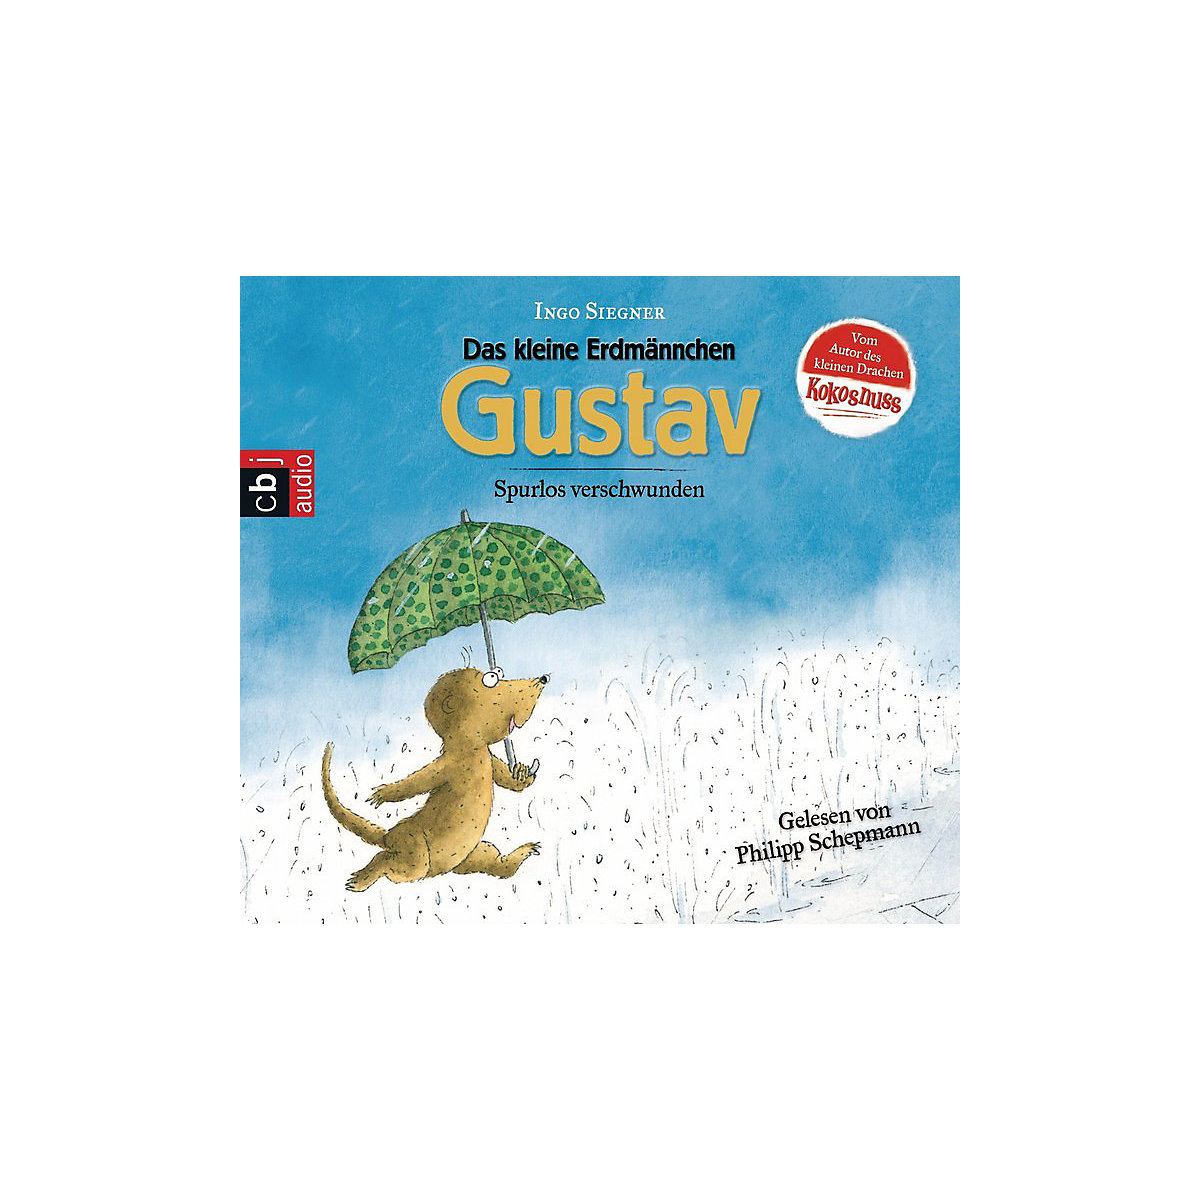 Das kleine Erdmännchen Gustav: Gustav spurlos verschwunden 1 Audio-CD